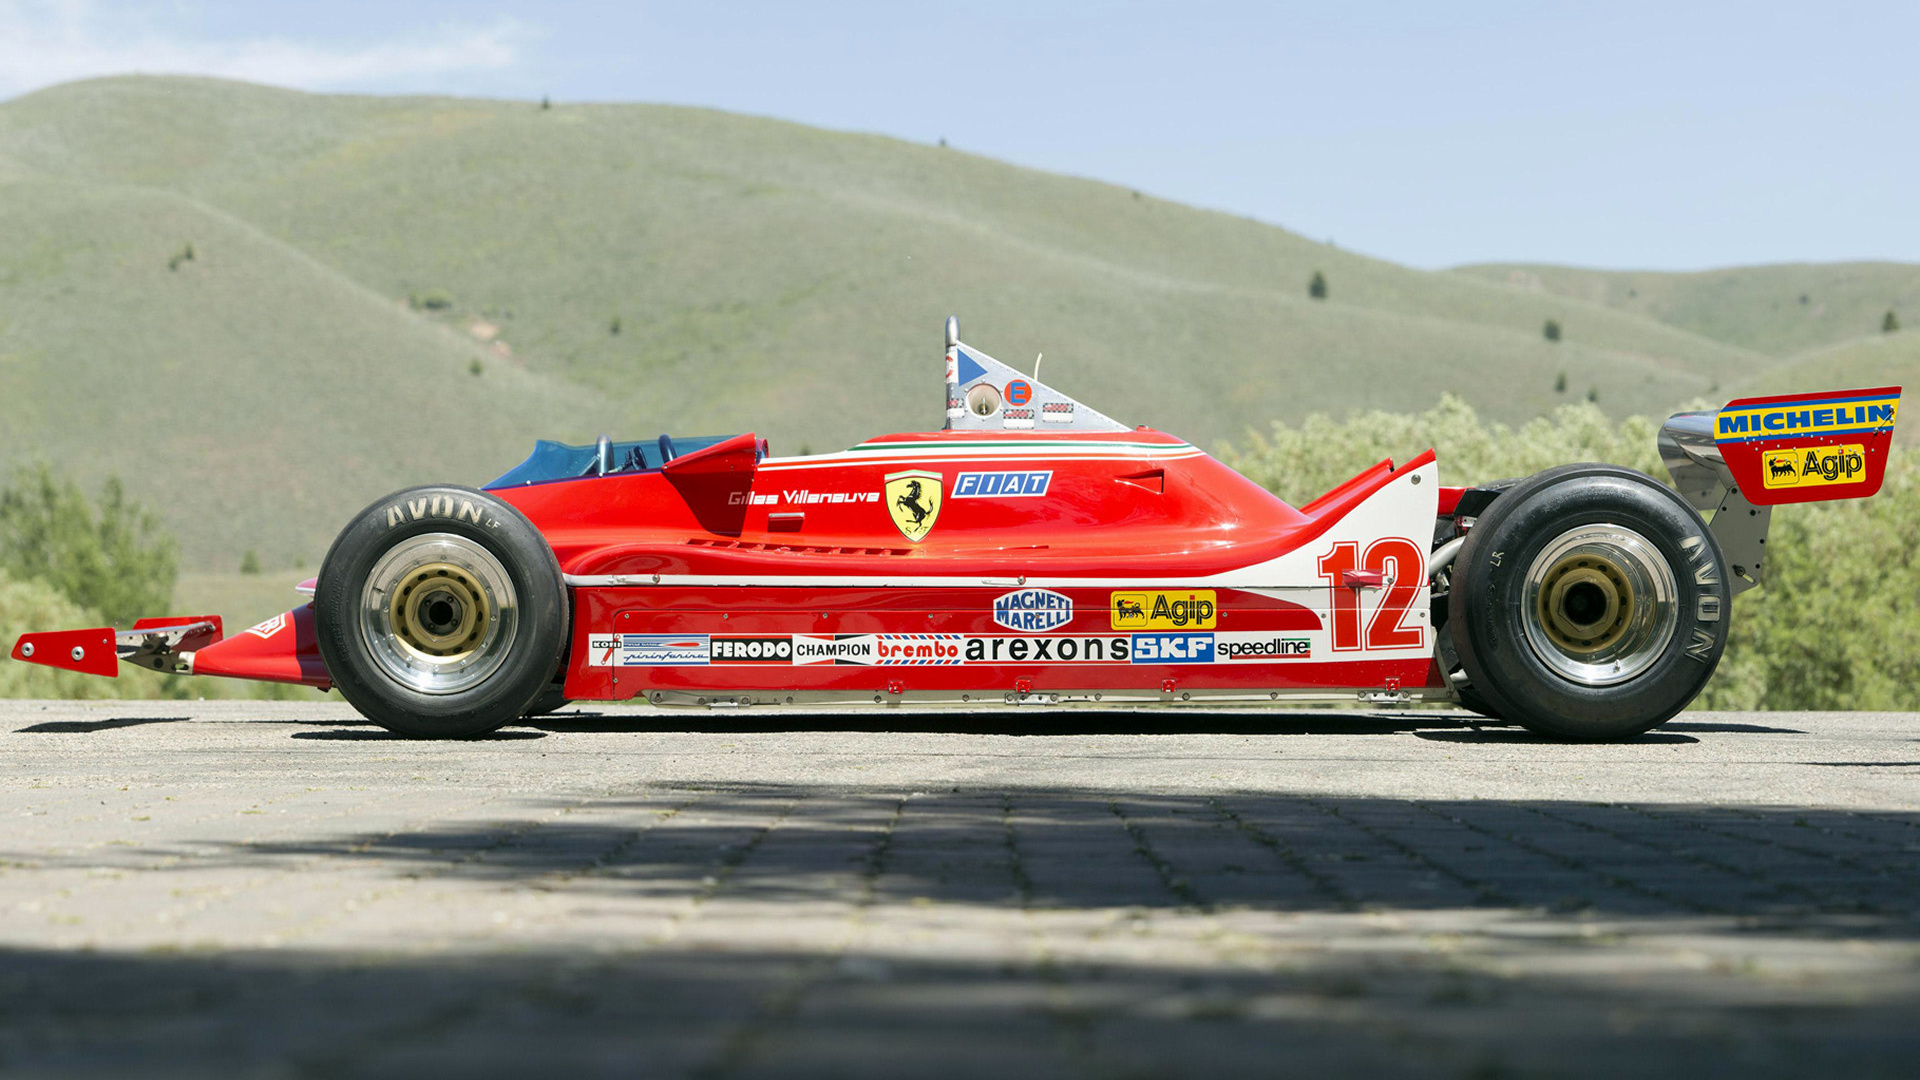 Descargar fondos de escritorio de Ferrari 312 T4 HD